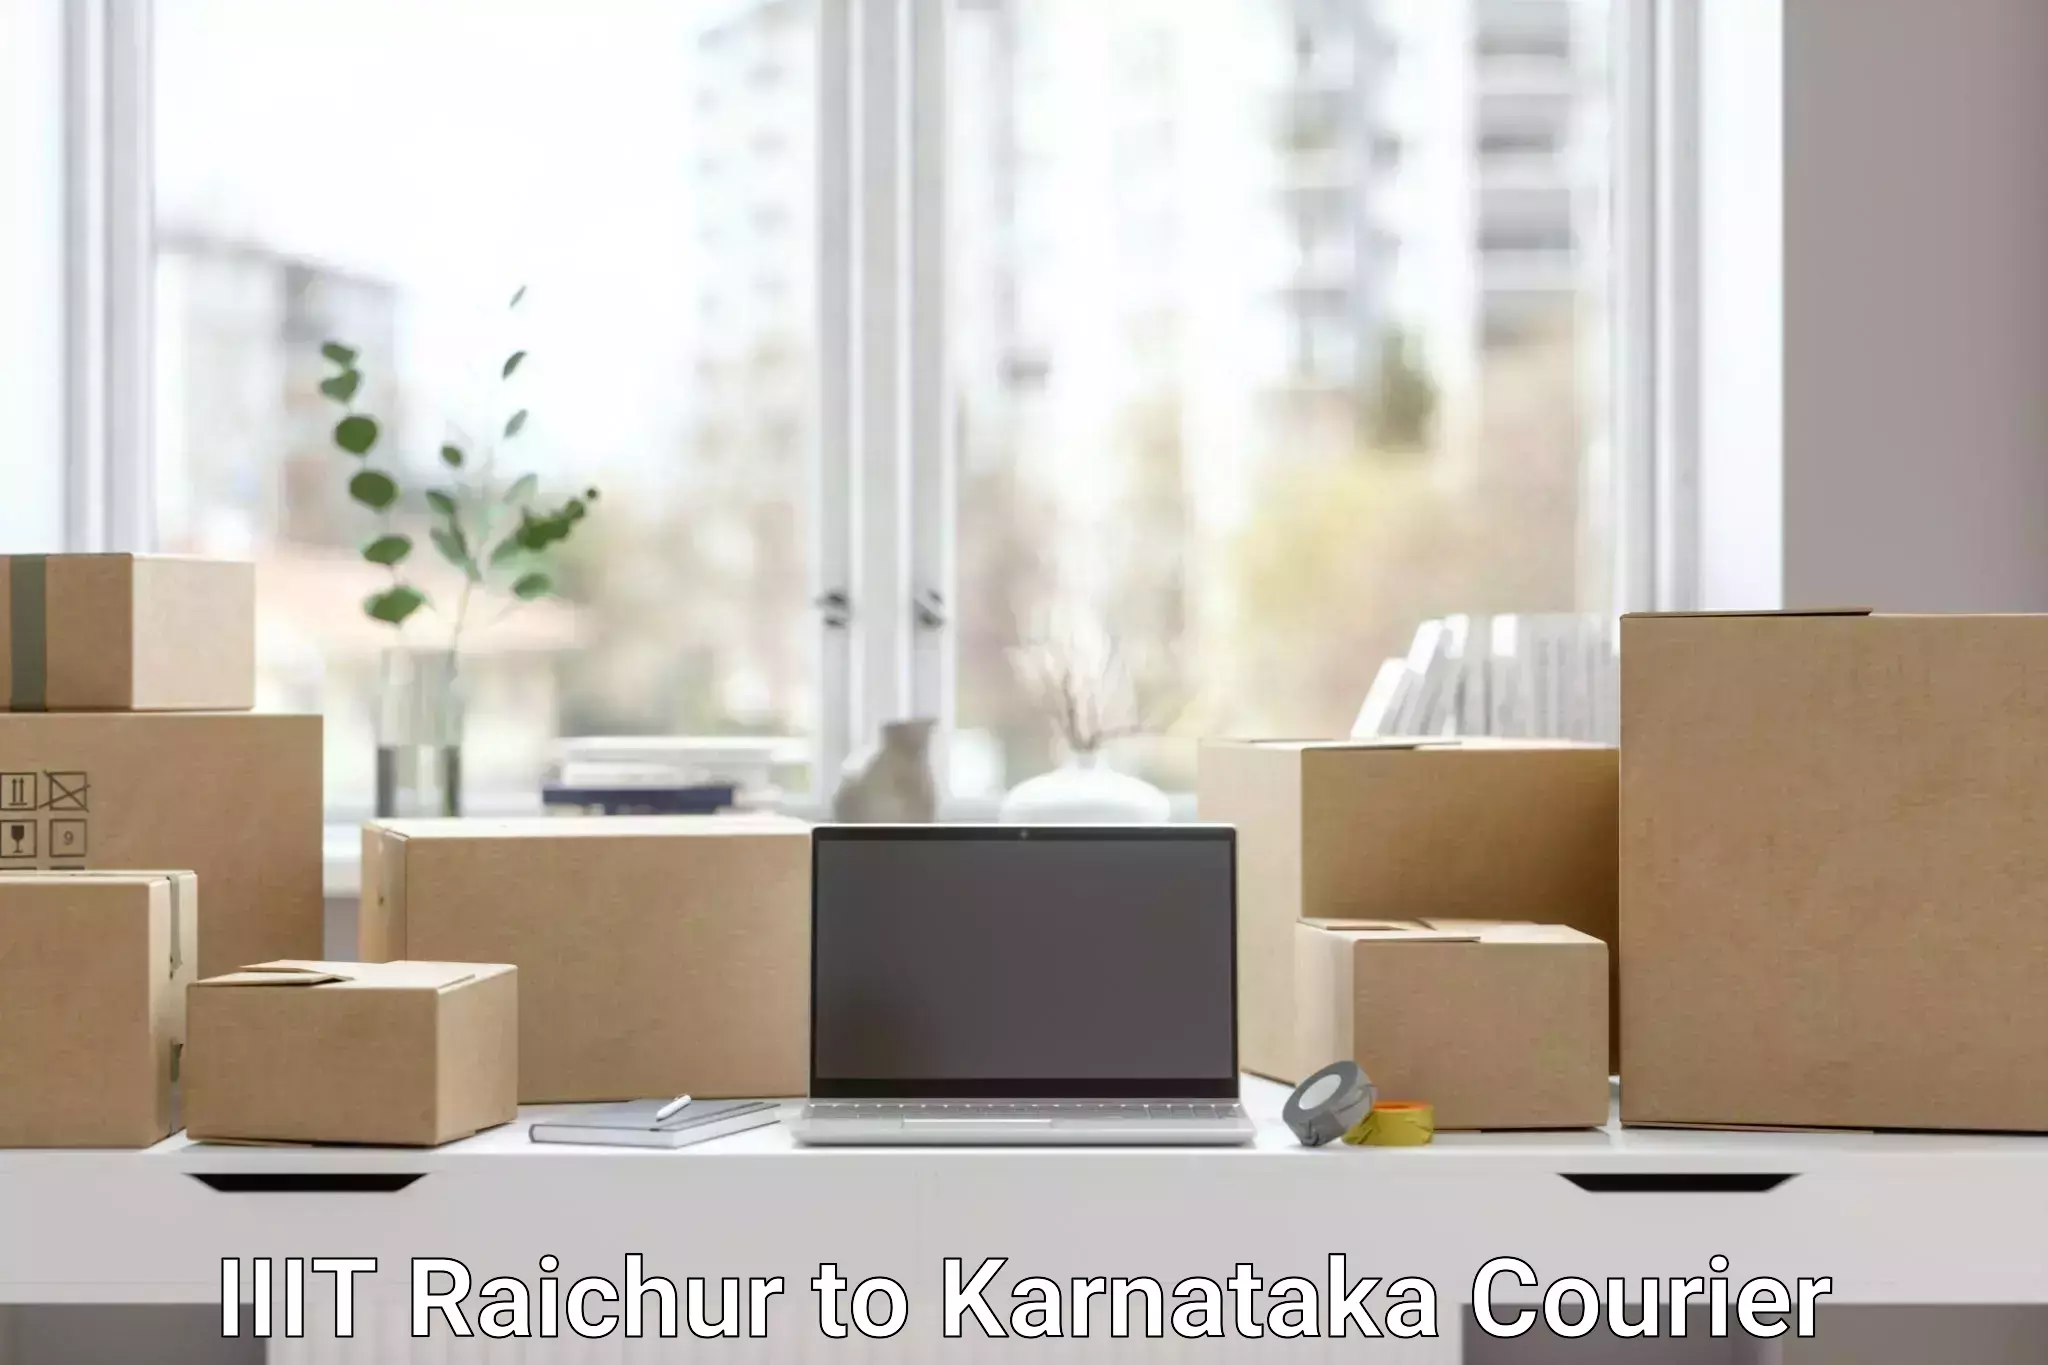 Urgent courier needs IIIT Raichur to Chikodi